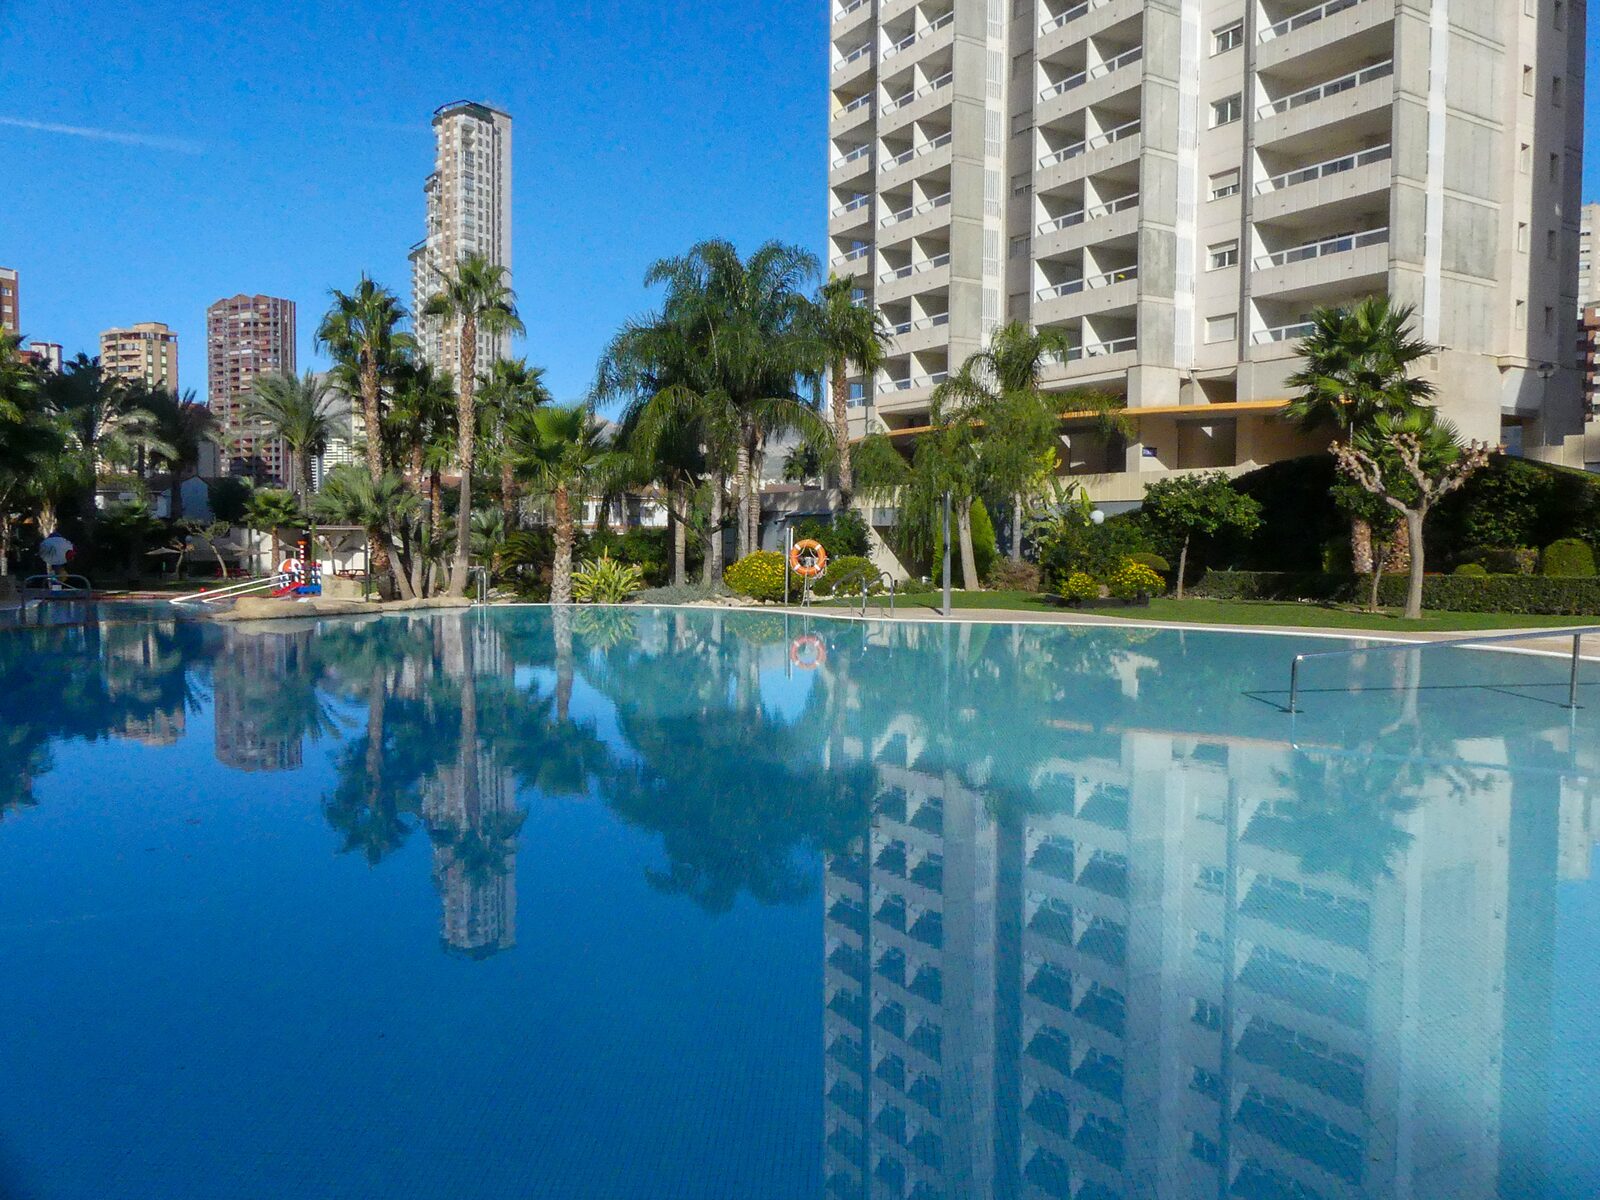 Geniet van prachtige zwembaden bij Siroco-Gemelos 22, hét appartementencomplex van Benidorm!